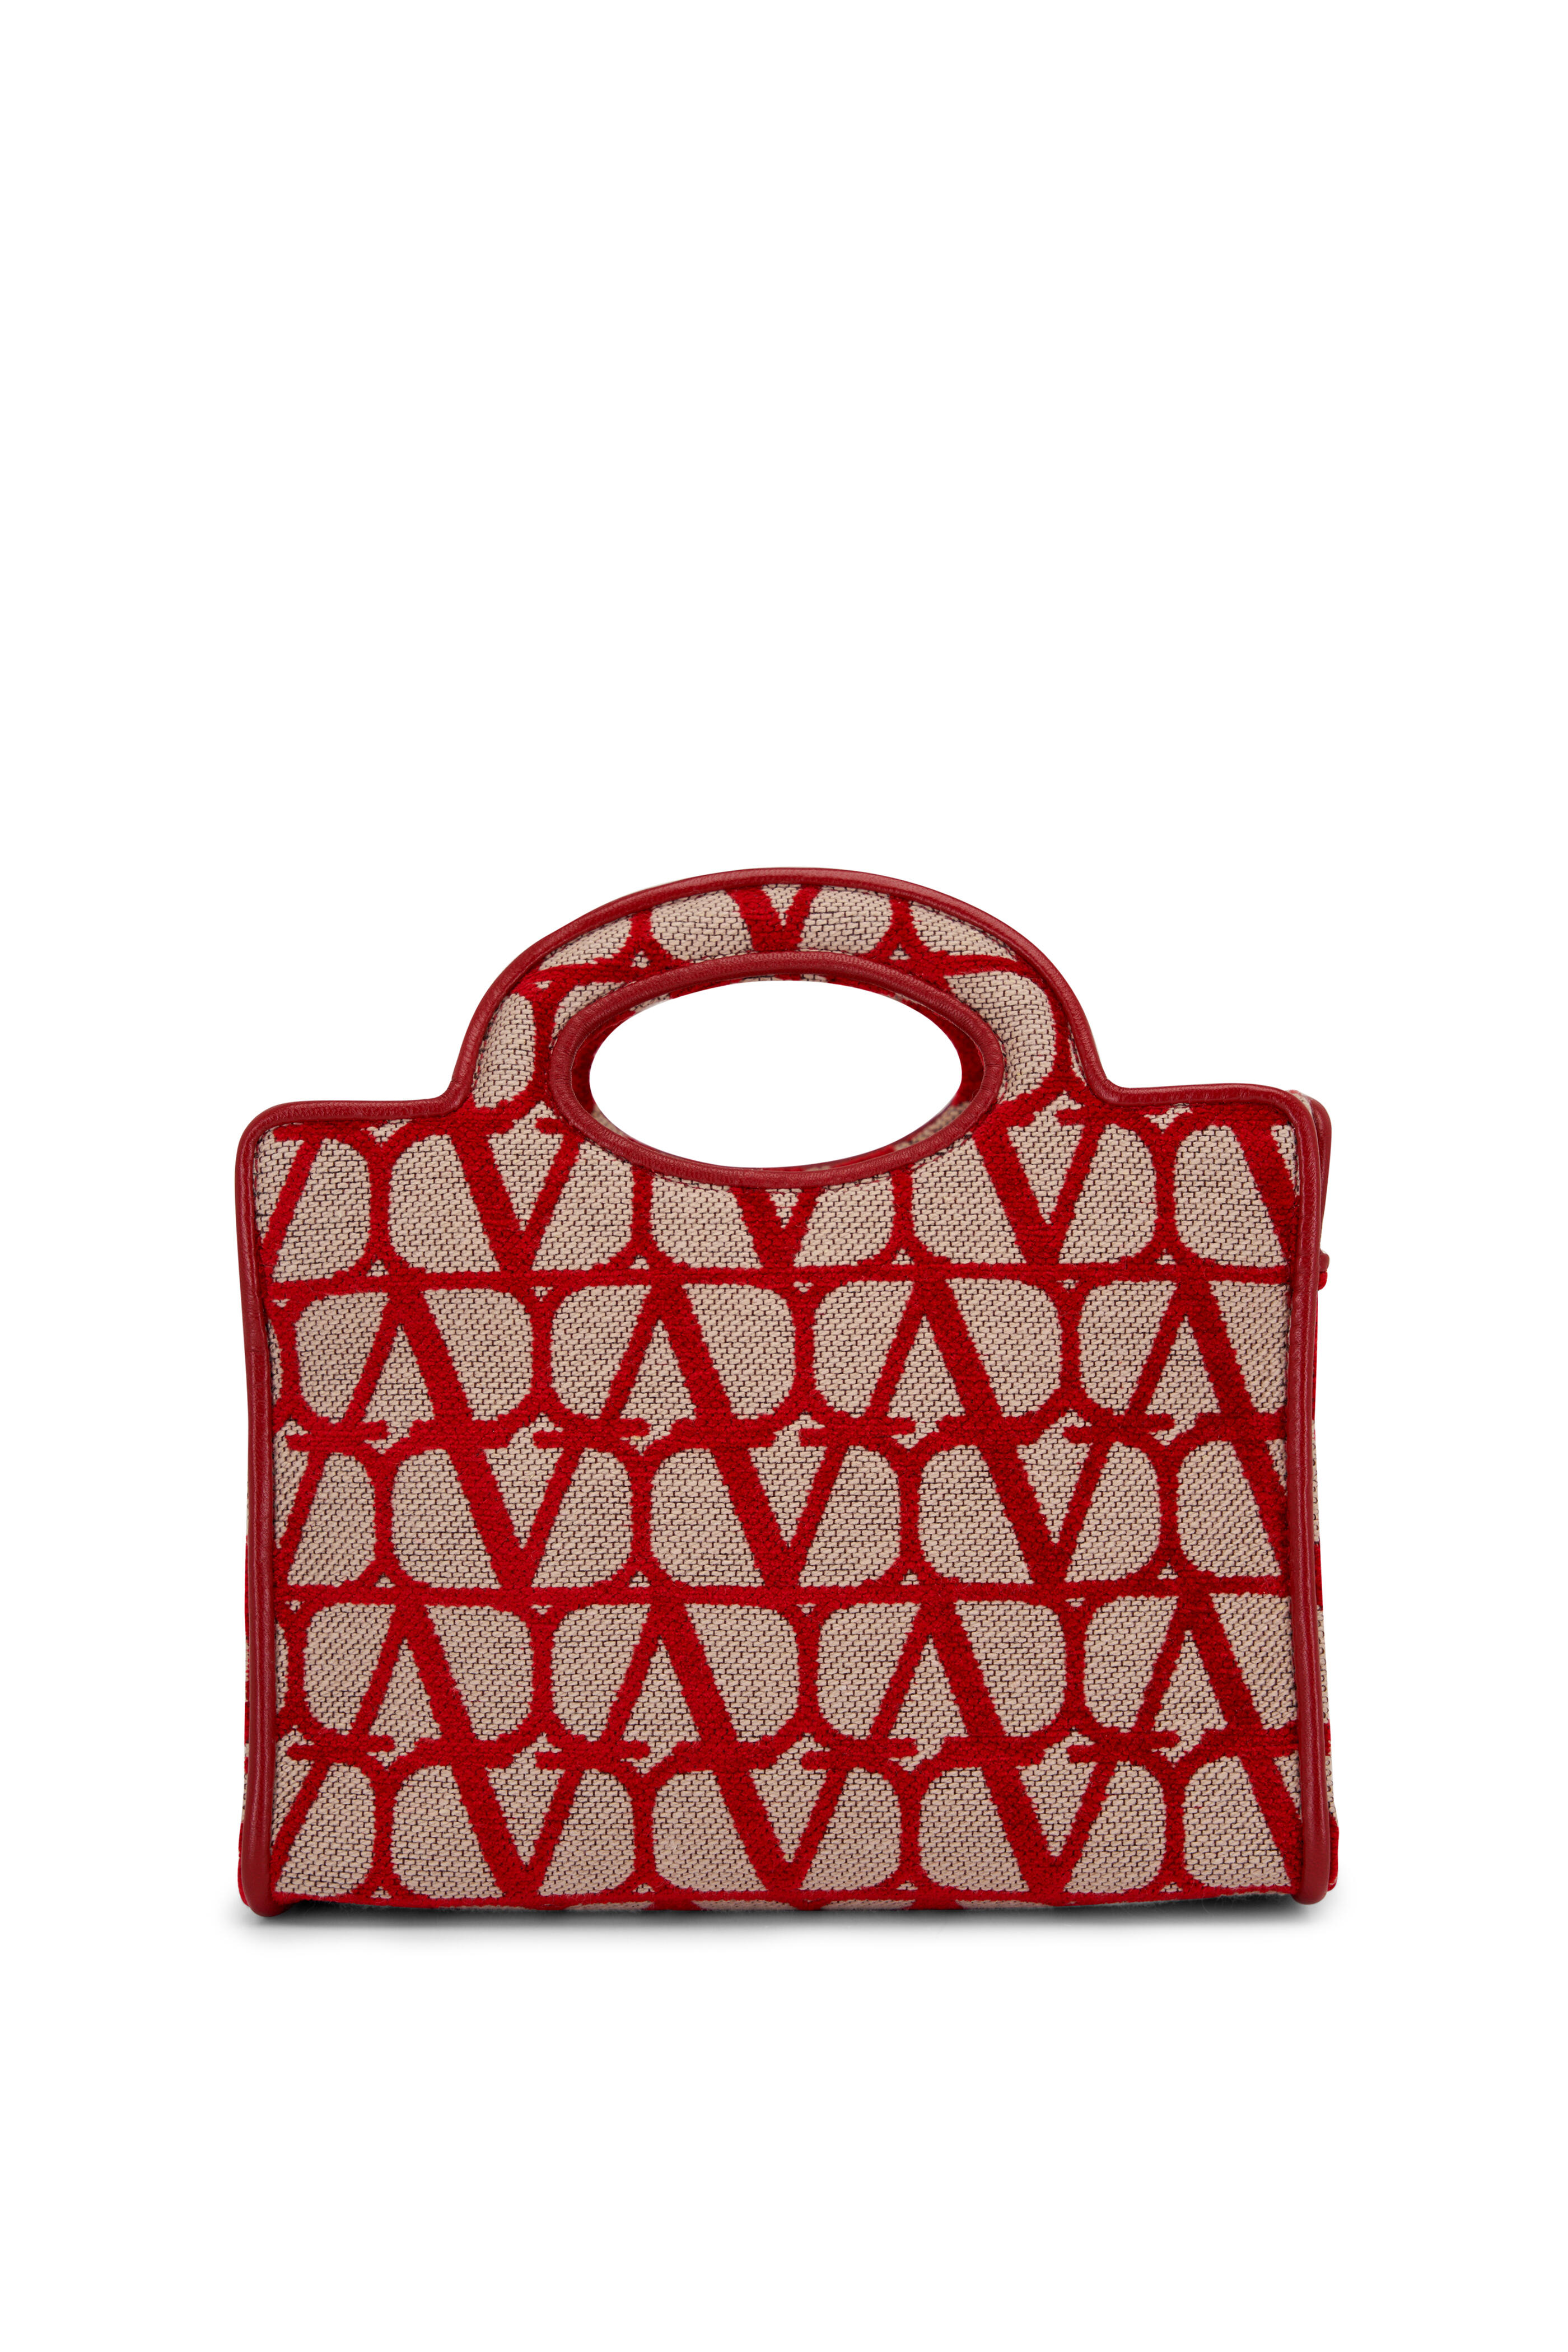 V Logo Small Canvas Tote Bag in Beige - Valentino Garavani